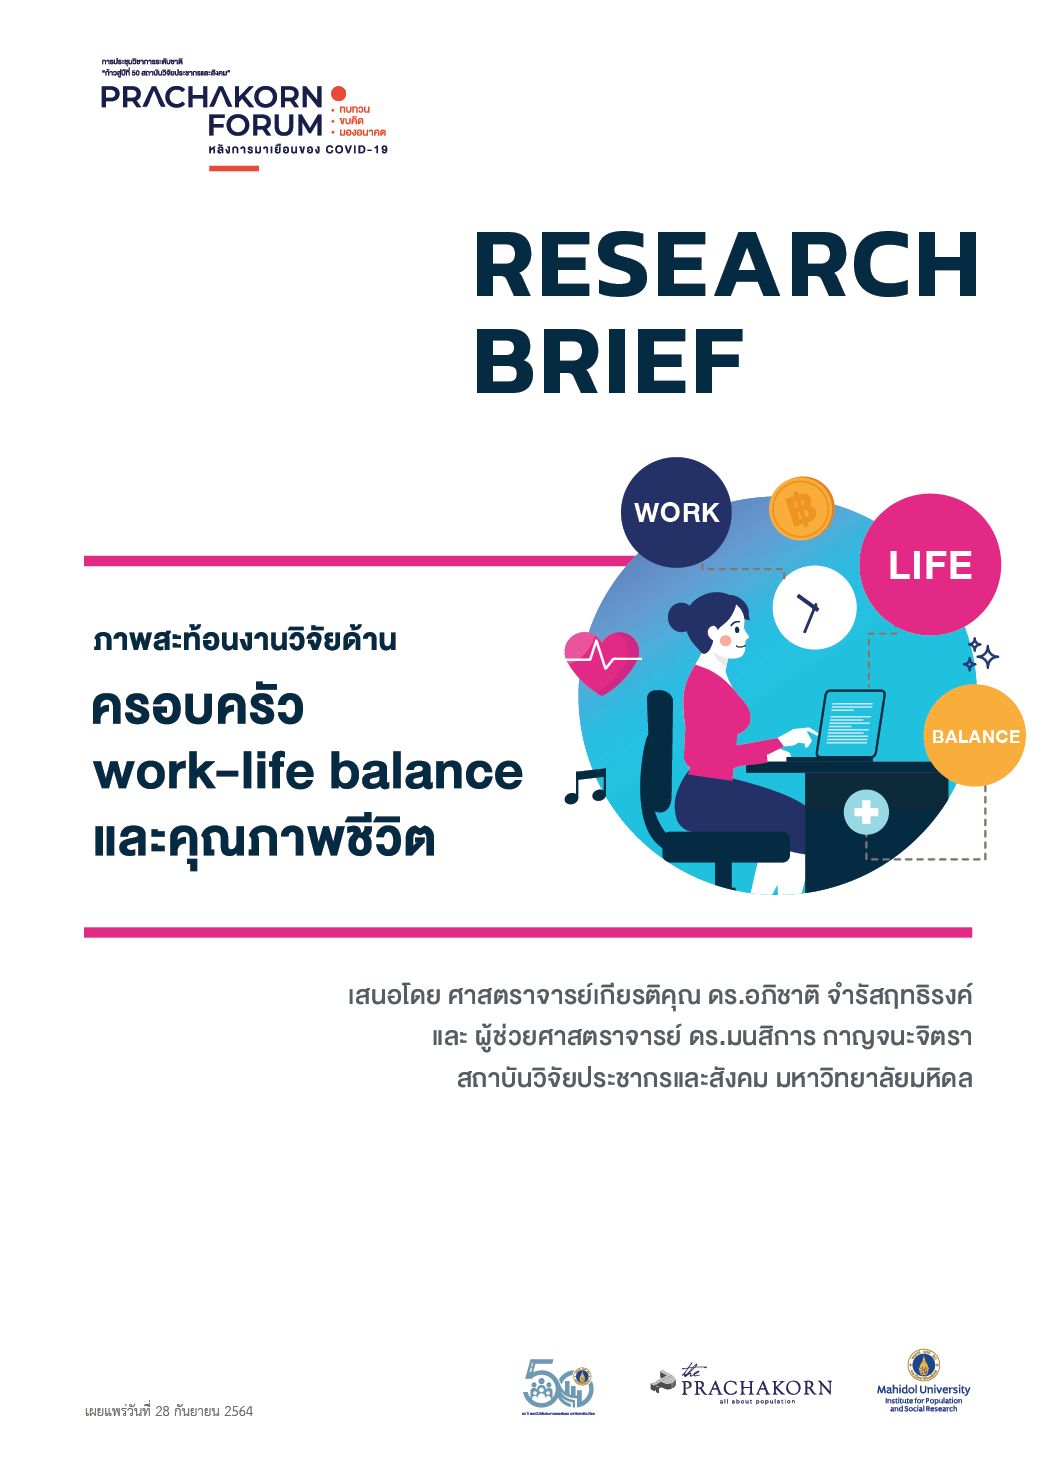 Prachakorn Forum EP.11 | ภาพสะท้อนงานวิจัยด้านครอบครัว work life balance และคุณภาพชีวิต